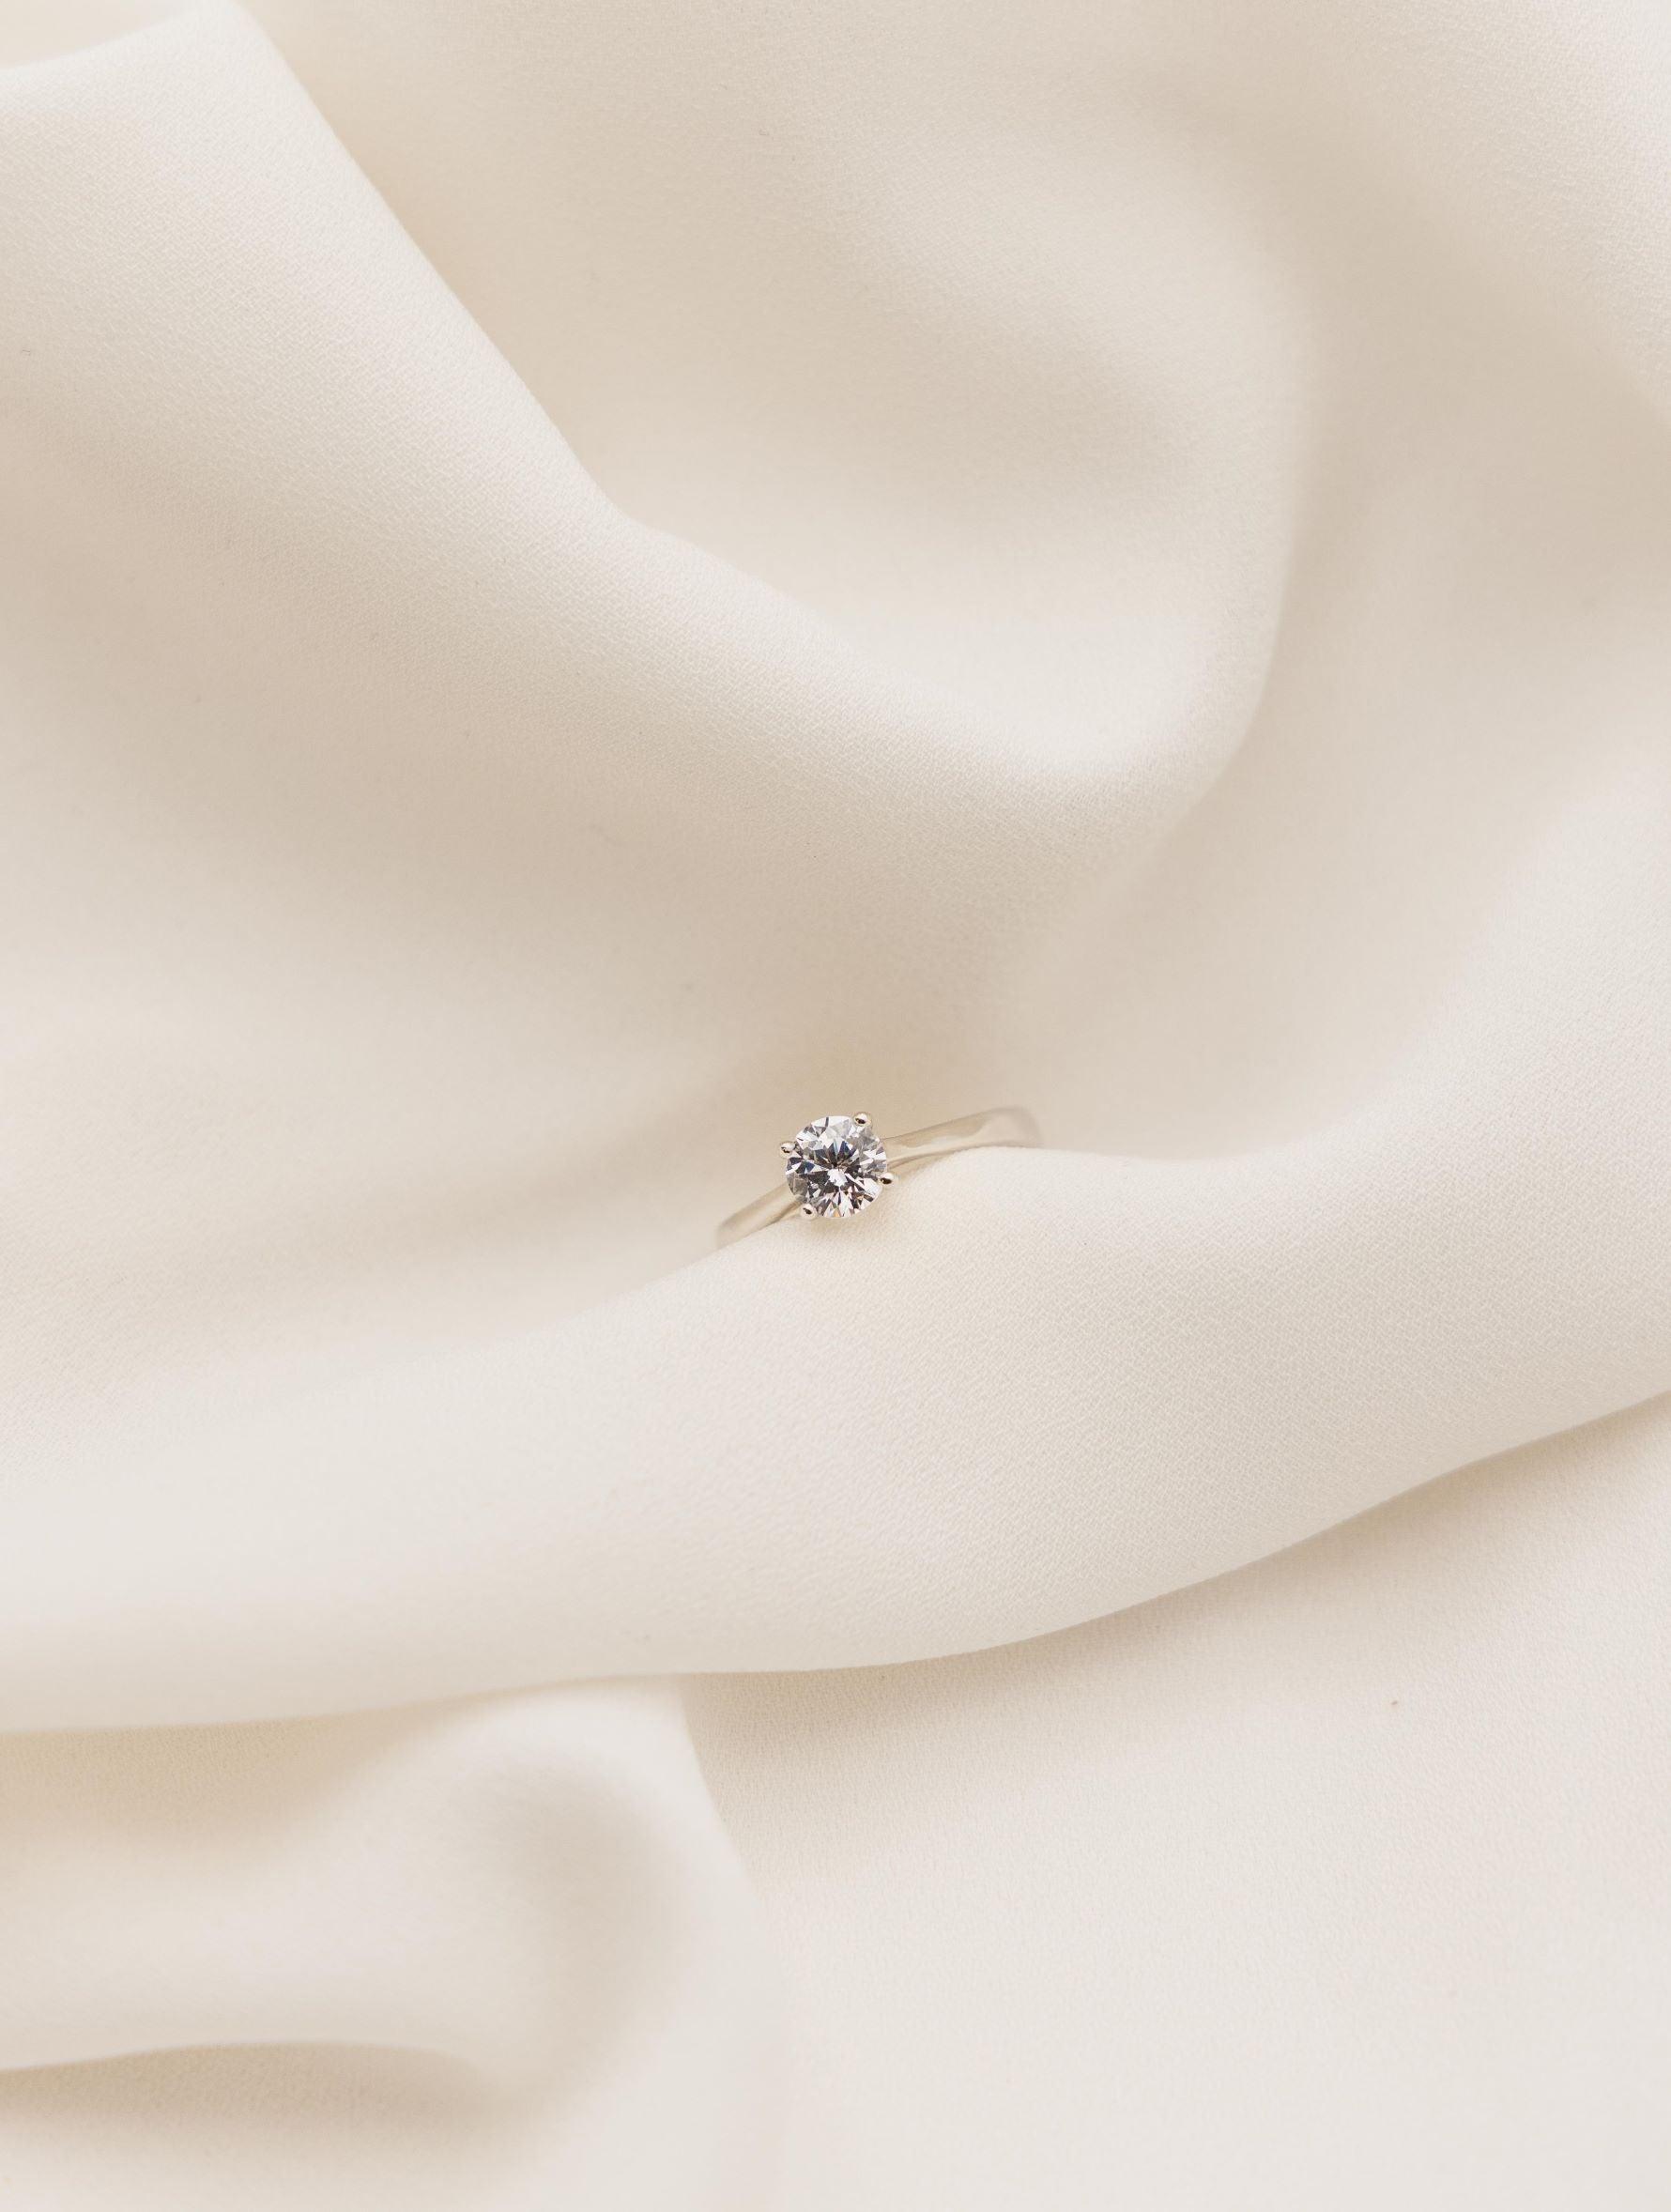 Λευκόχρυσο μονόπετρο δαχτυλίδι με διαμάντι και καστόνι που αγκαλιάζει την πέτρα με τέσσερα δόντια, επάνω σε λευκό μετάξι.